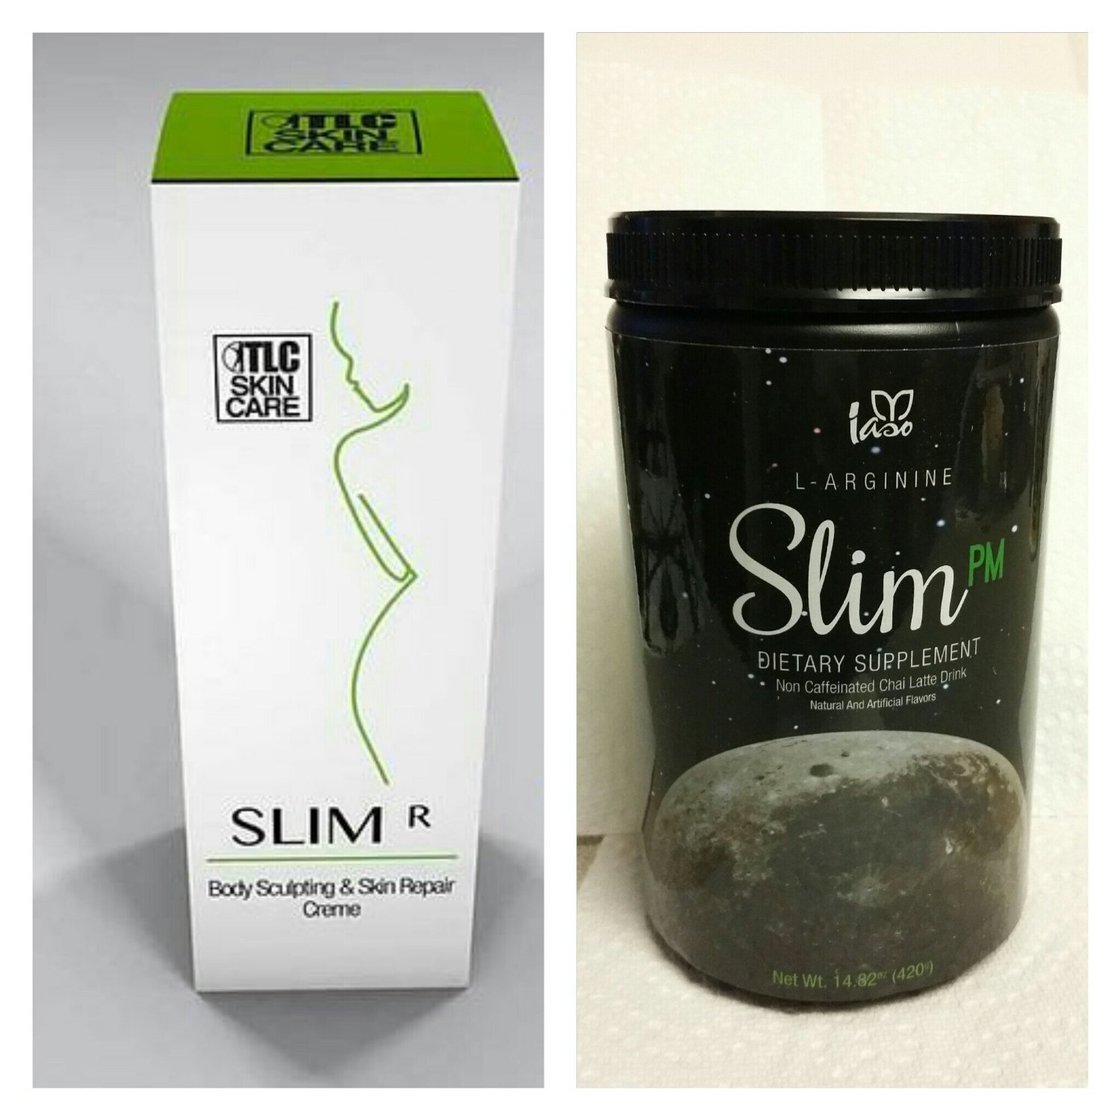 Image of Iaso SlimR Body Toner Cream & Slim Pm